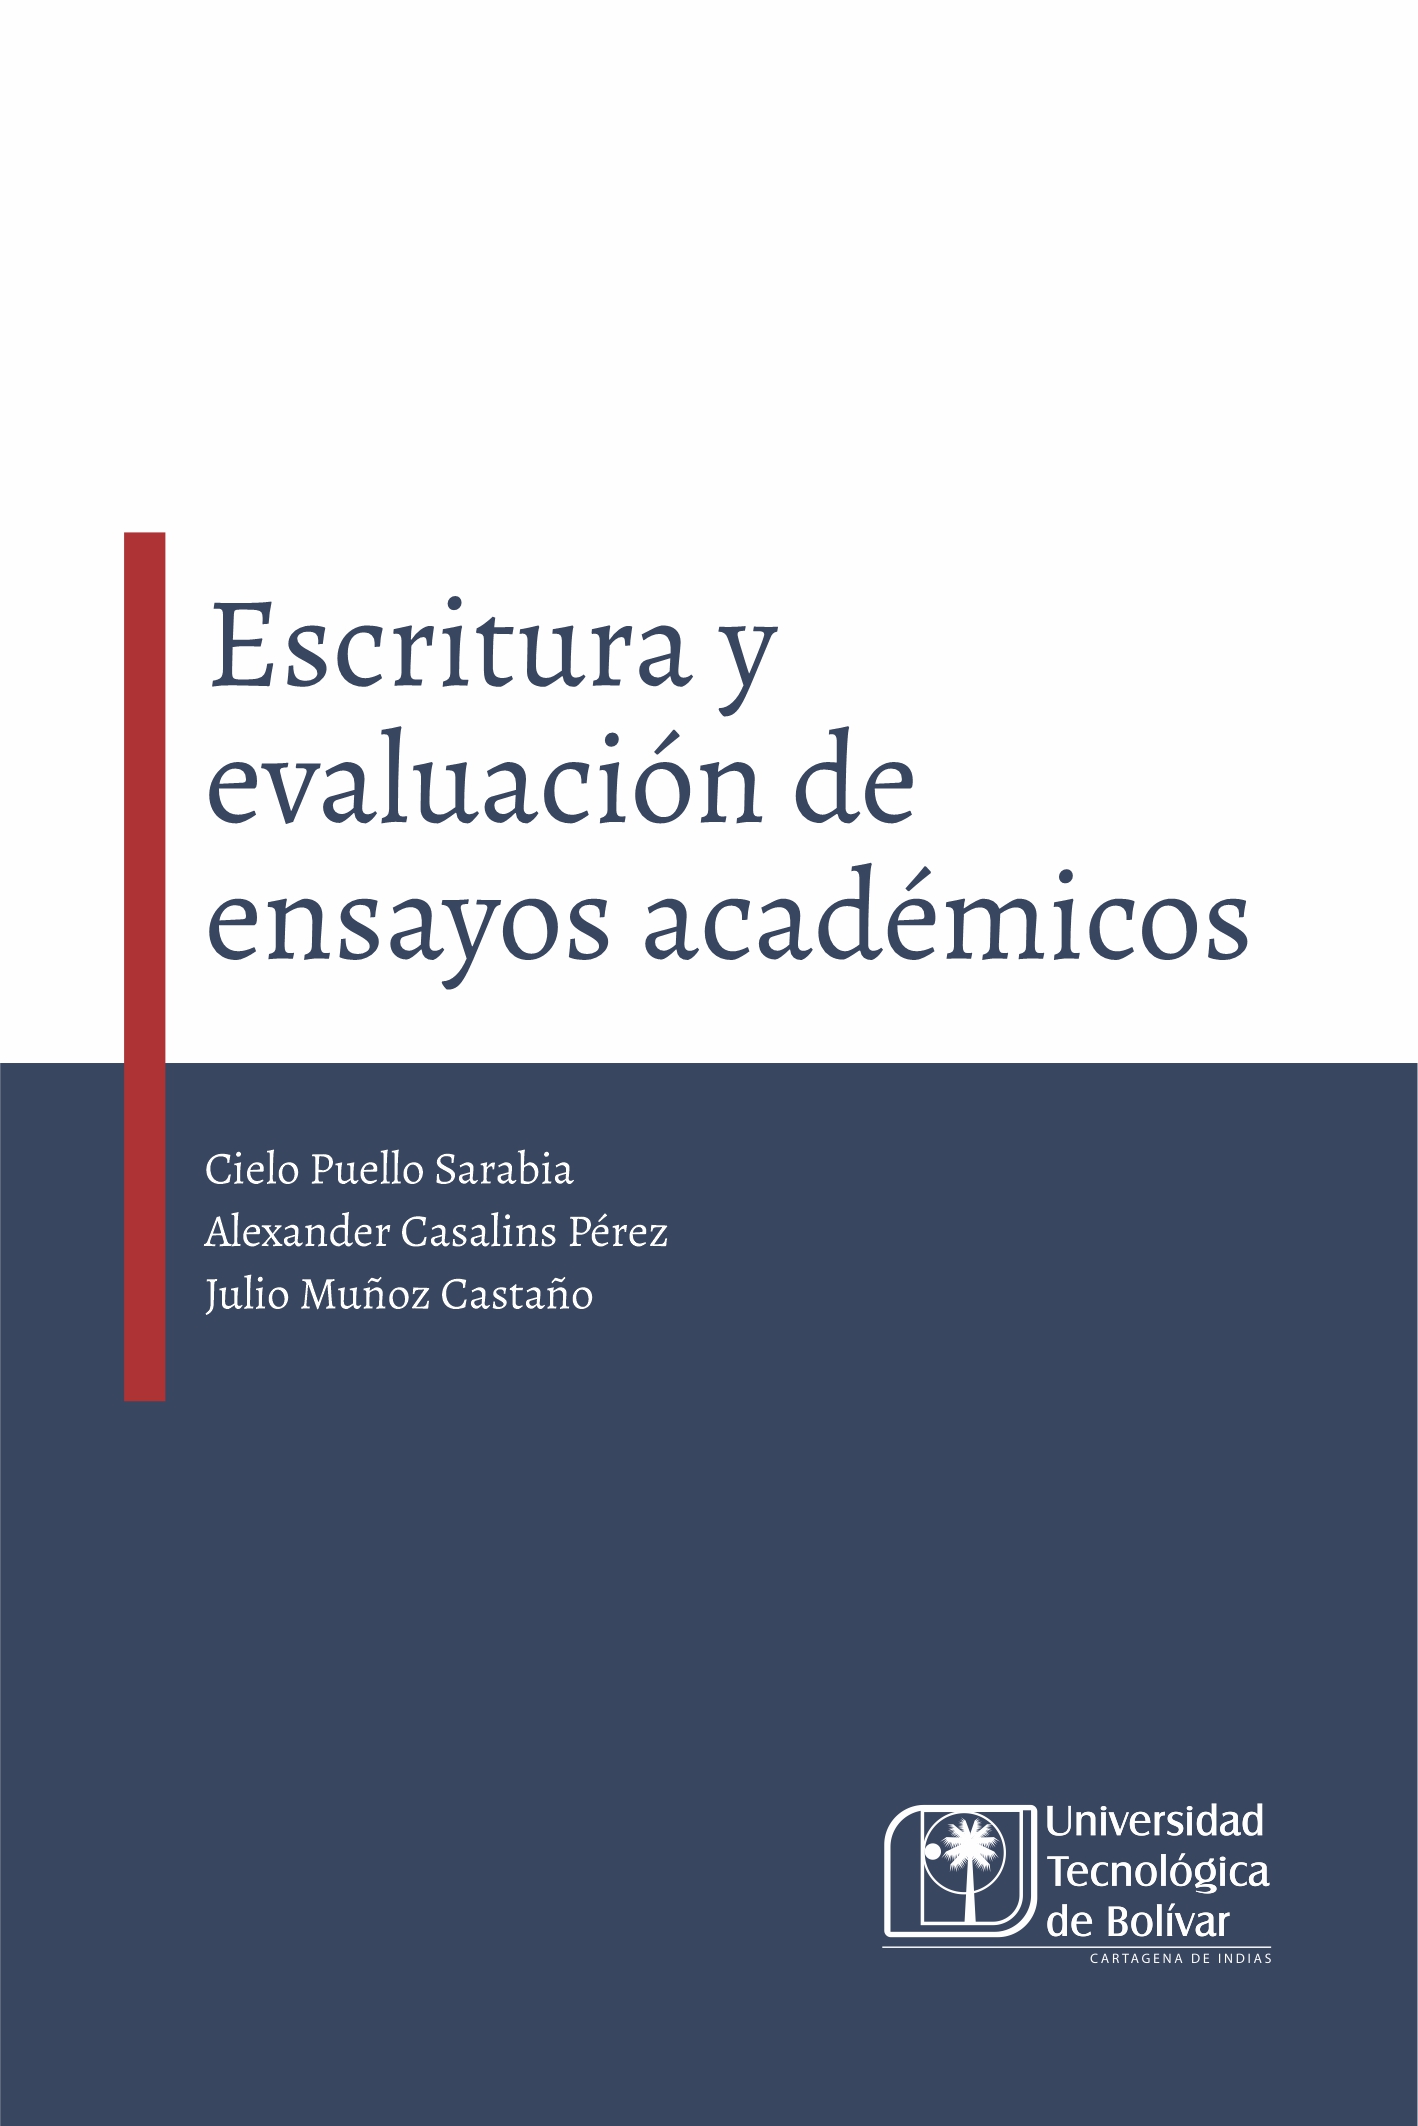 Escritura y evaluación de ensayos académicos